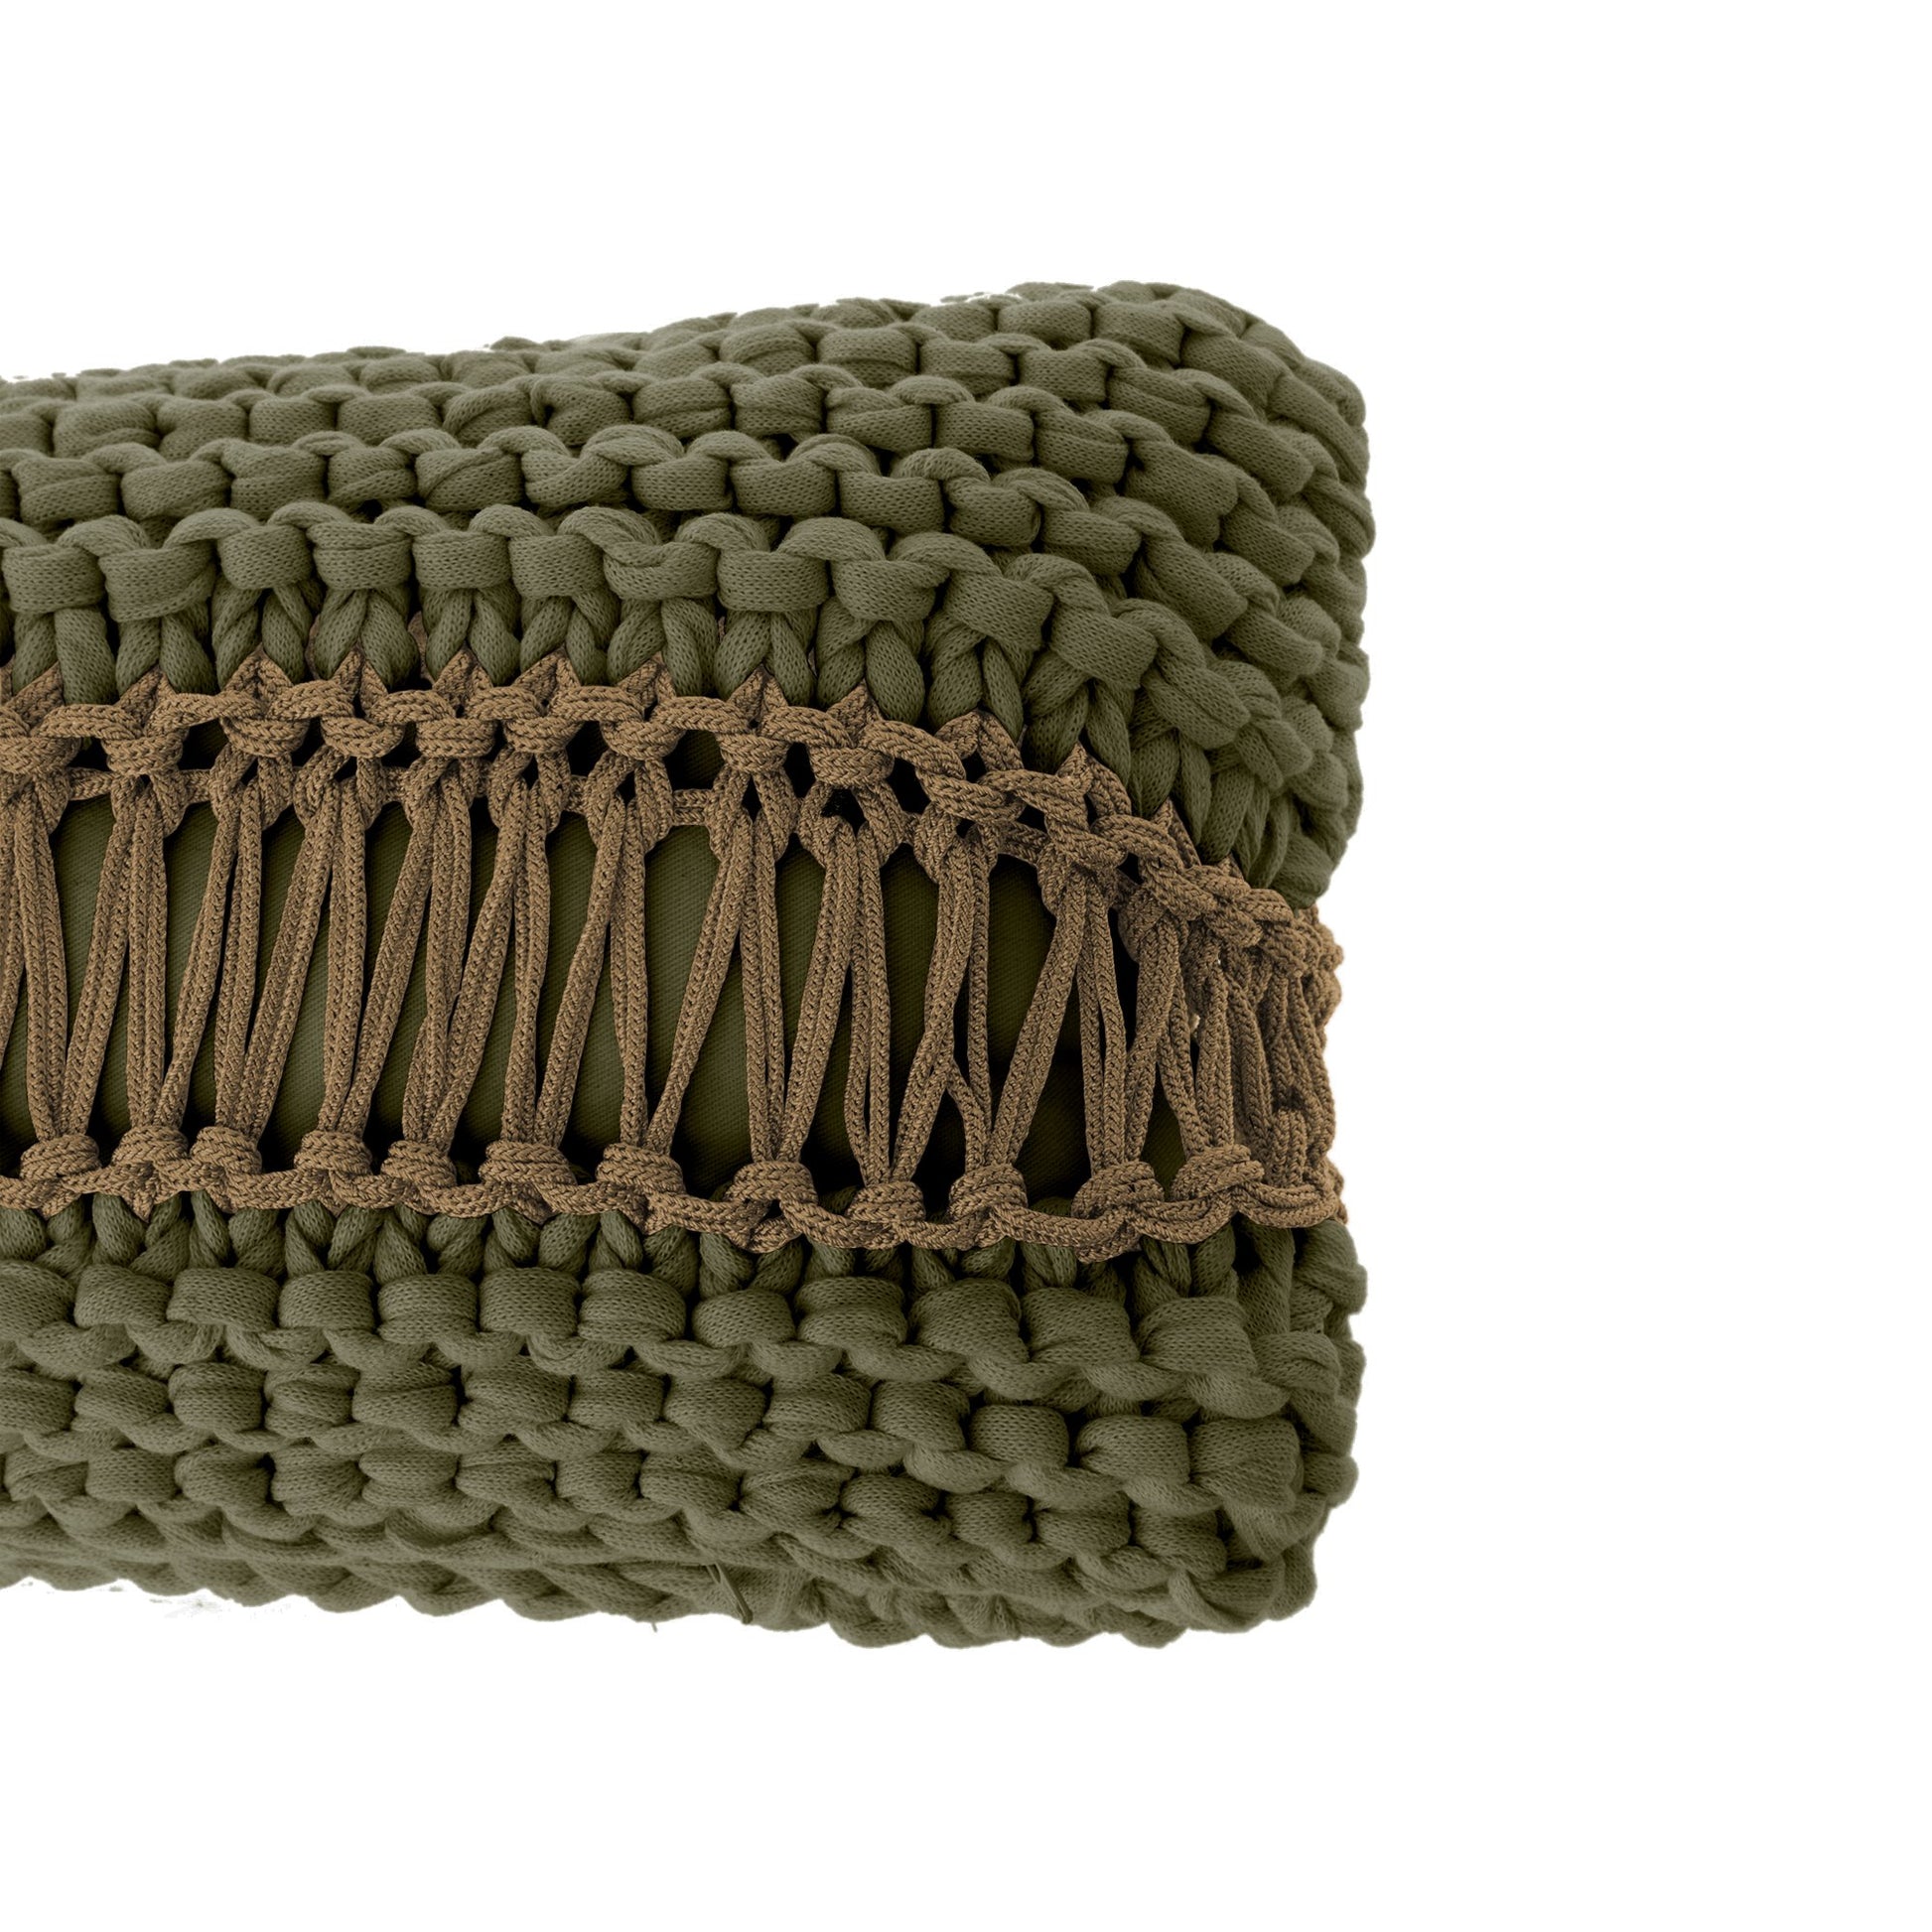 Almofada em tricô artesanal frente e verso, Verde, com fio 100% algodão. Fechamento com zíper, possibilitando a remoção da capa para lavagem. Dimensões: Altura - 25cm; Largura - 80cm. 